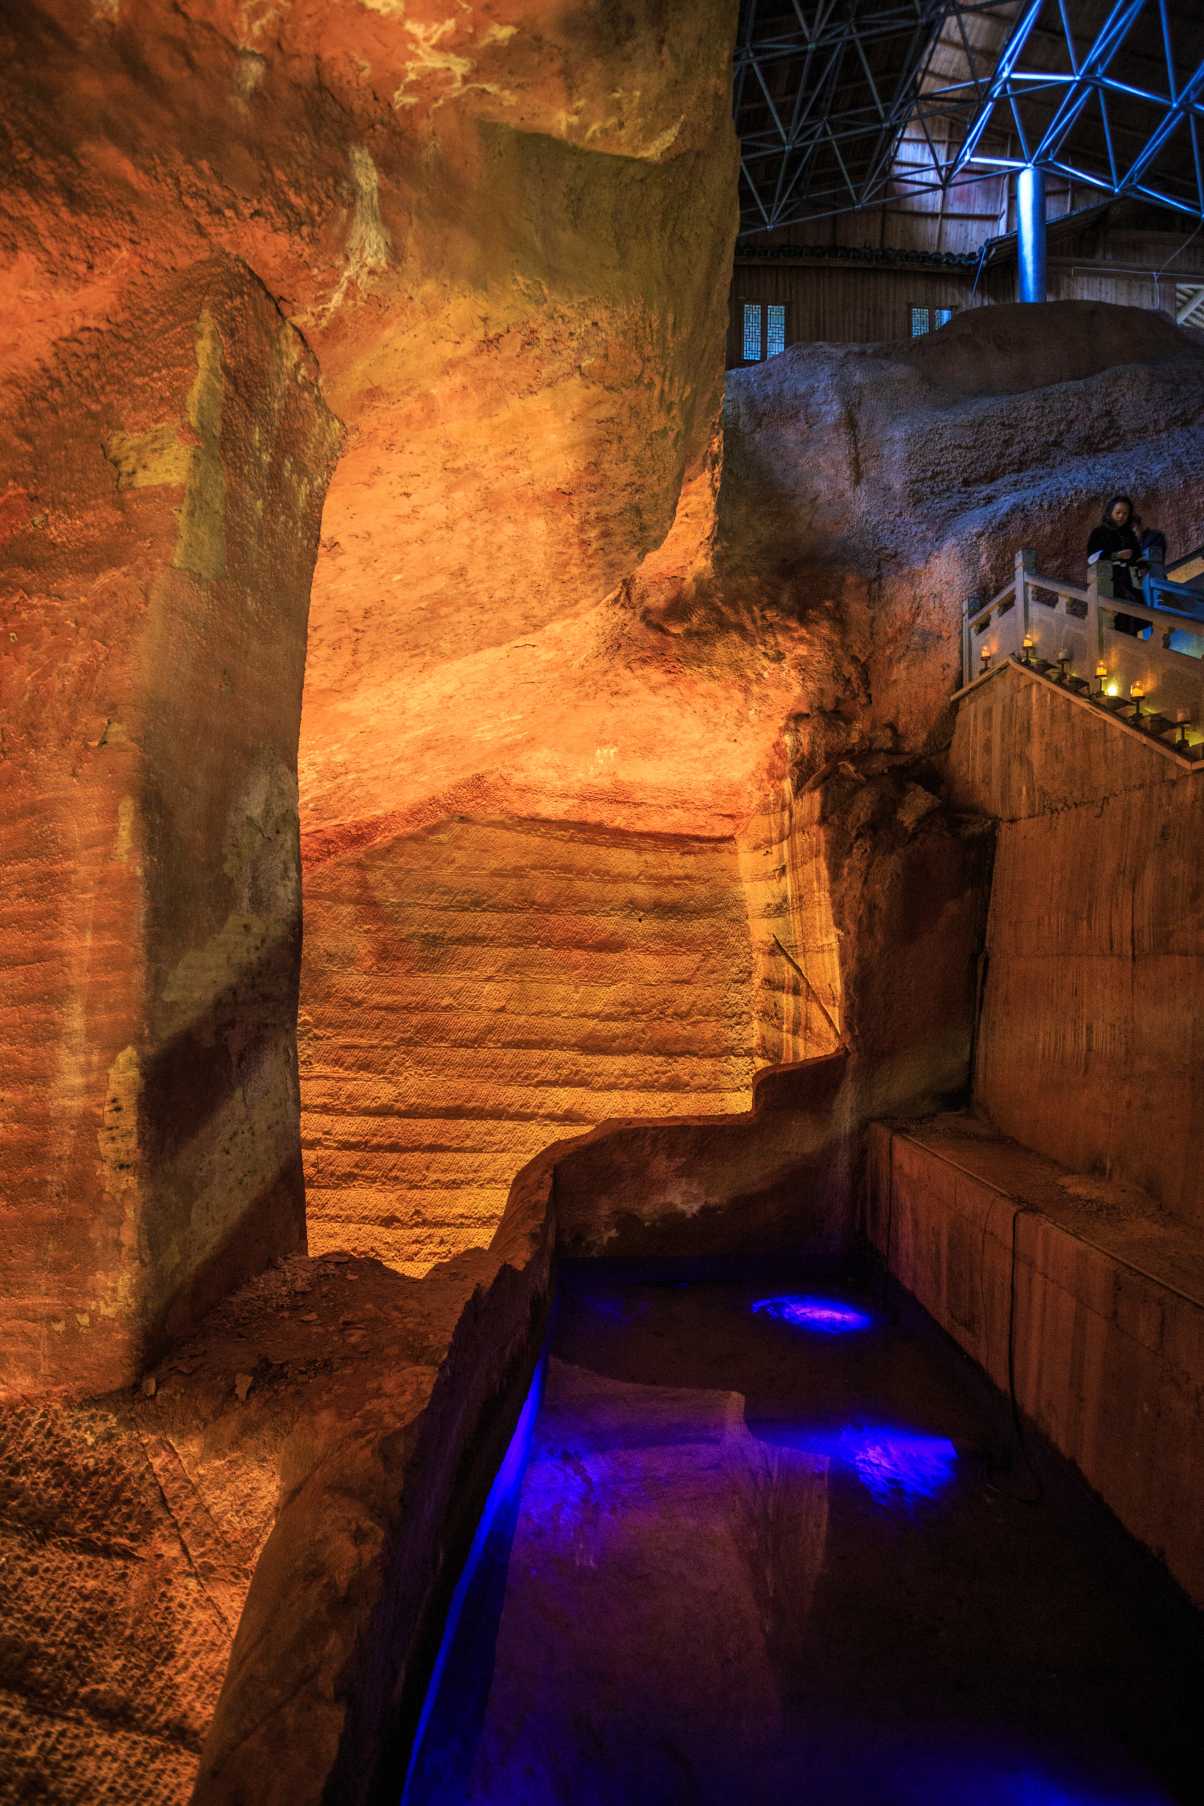 D'Geheimnis vum "High-Tech" Tool markéiert an de China antike Longyou Caves 5